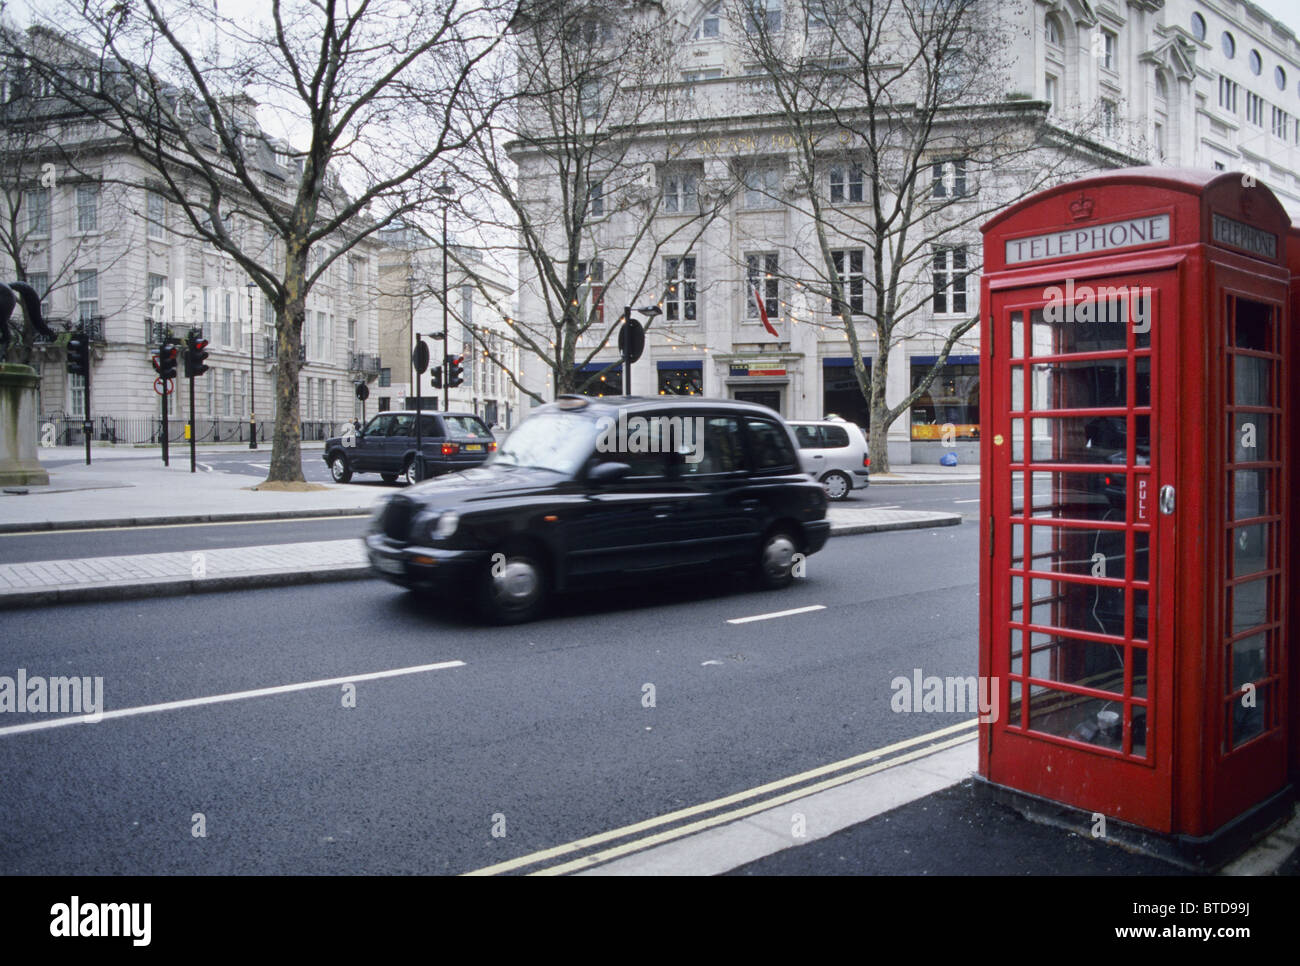 Black taxi cab driving passé un téléphone rouge fort, Londres, Angleterre Banque D'Images